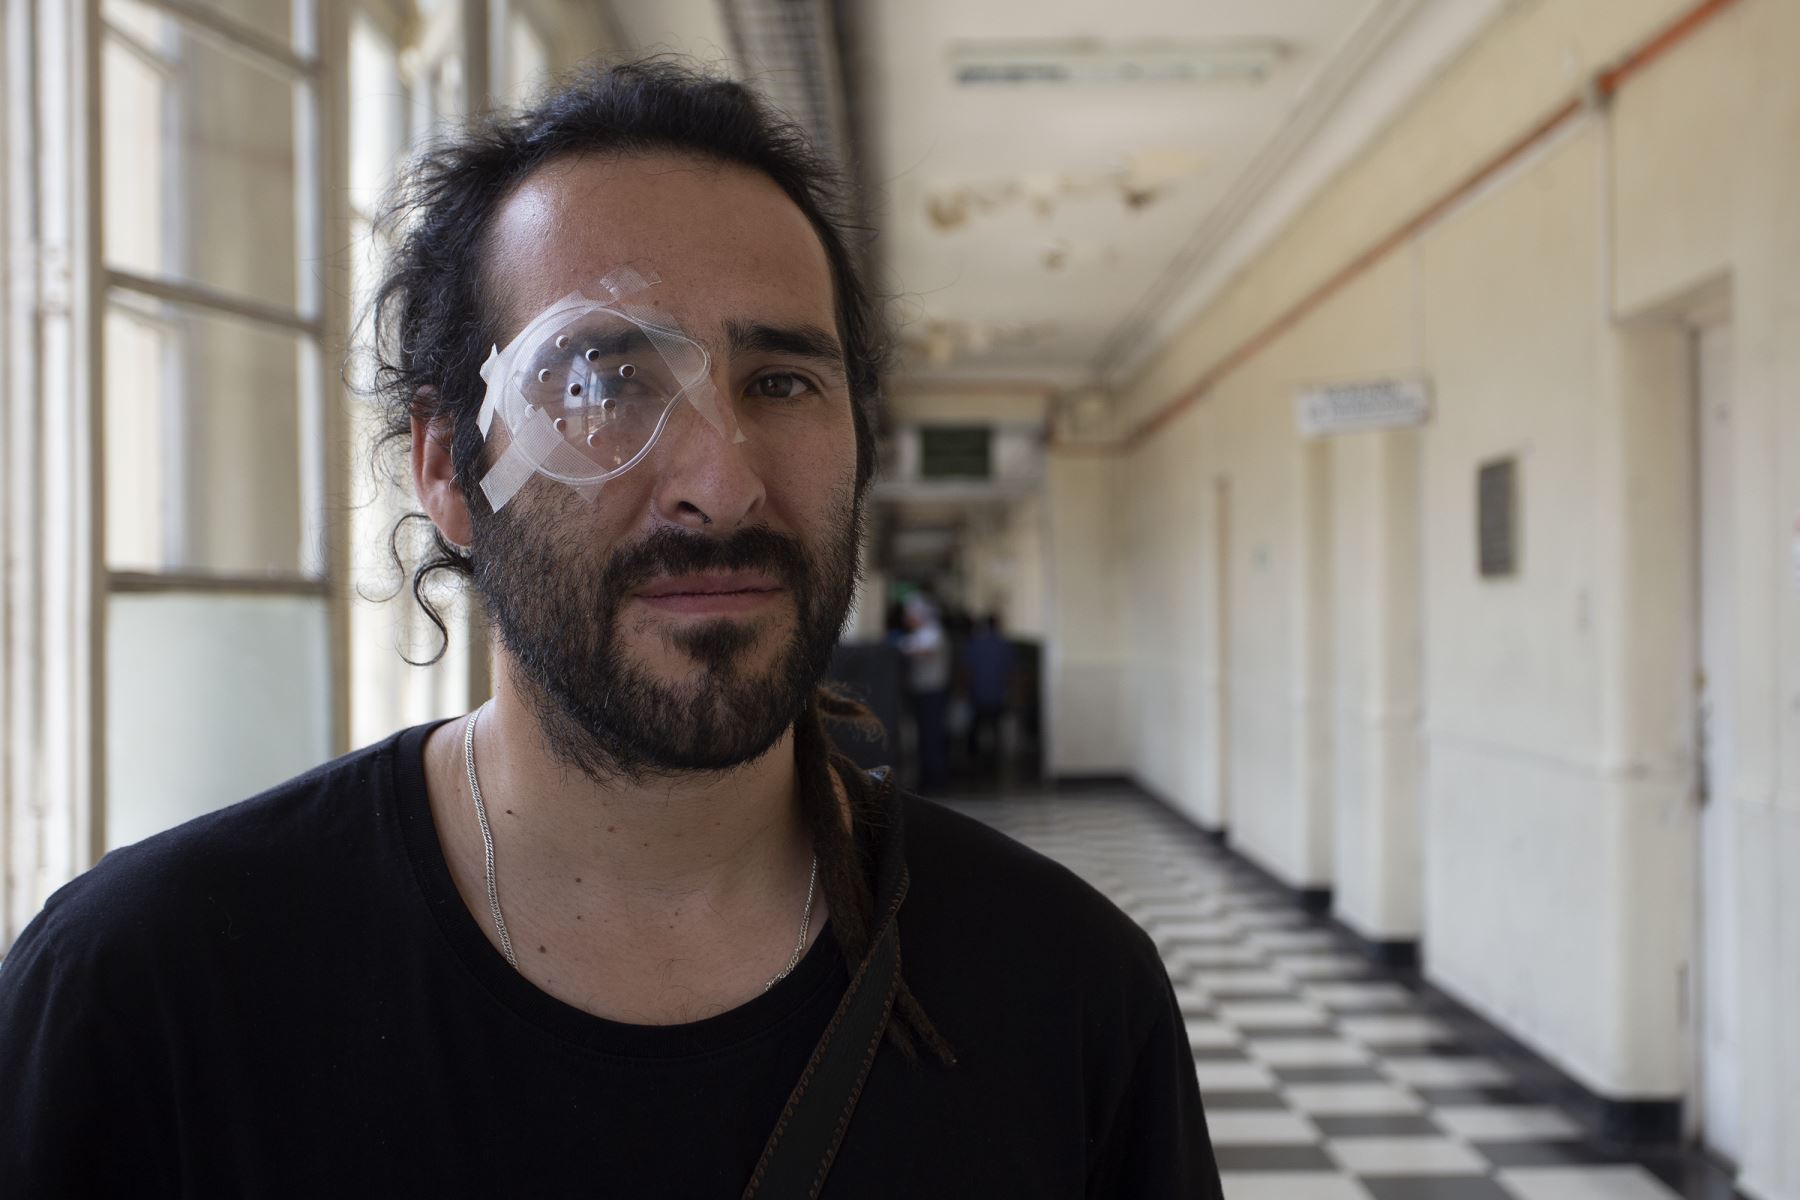 El trabajador de construcción y músico chileno César Callozo, de 35 años, resultó herido en el ojo debido a la violencia policial mientras protestaba, posa en un hospital de Santiago.
Foto: AFP